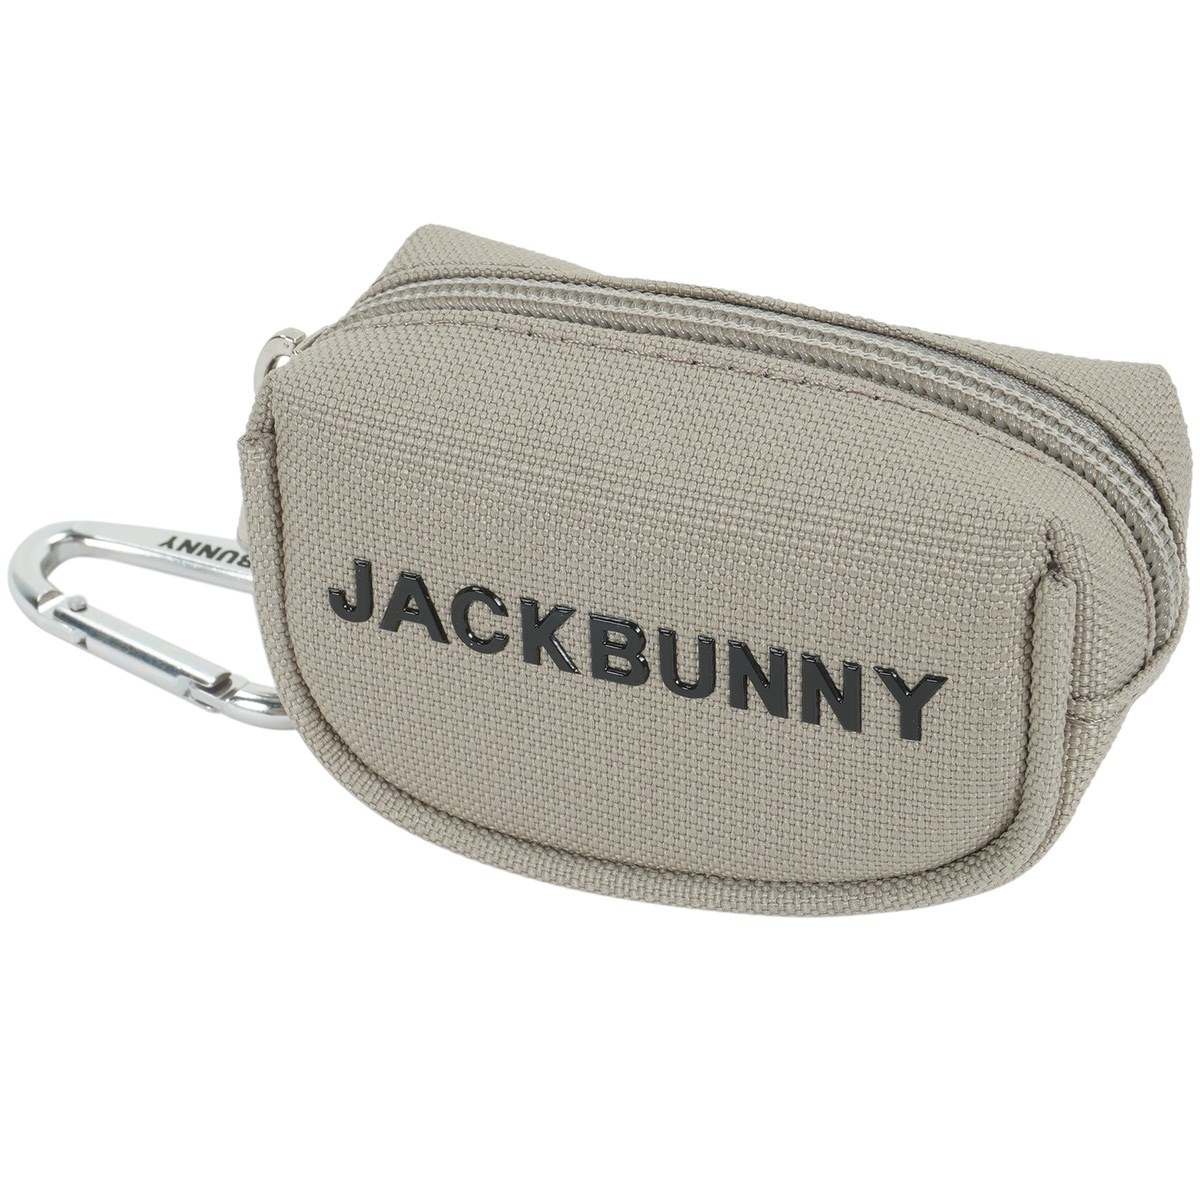 ボールポーチ(ゴルフボールケース)|Jack Bunny!!(ジャックバニー 